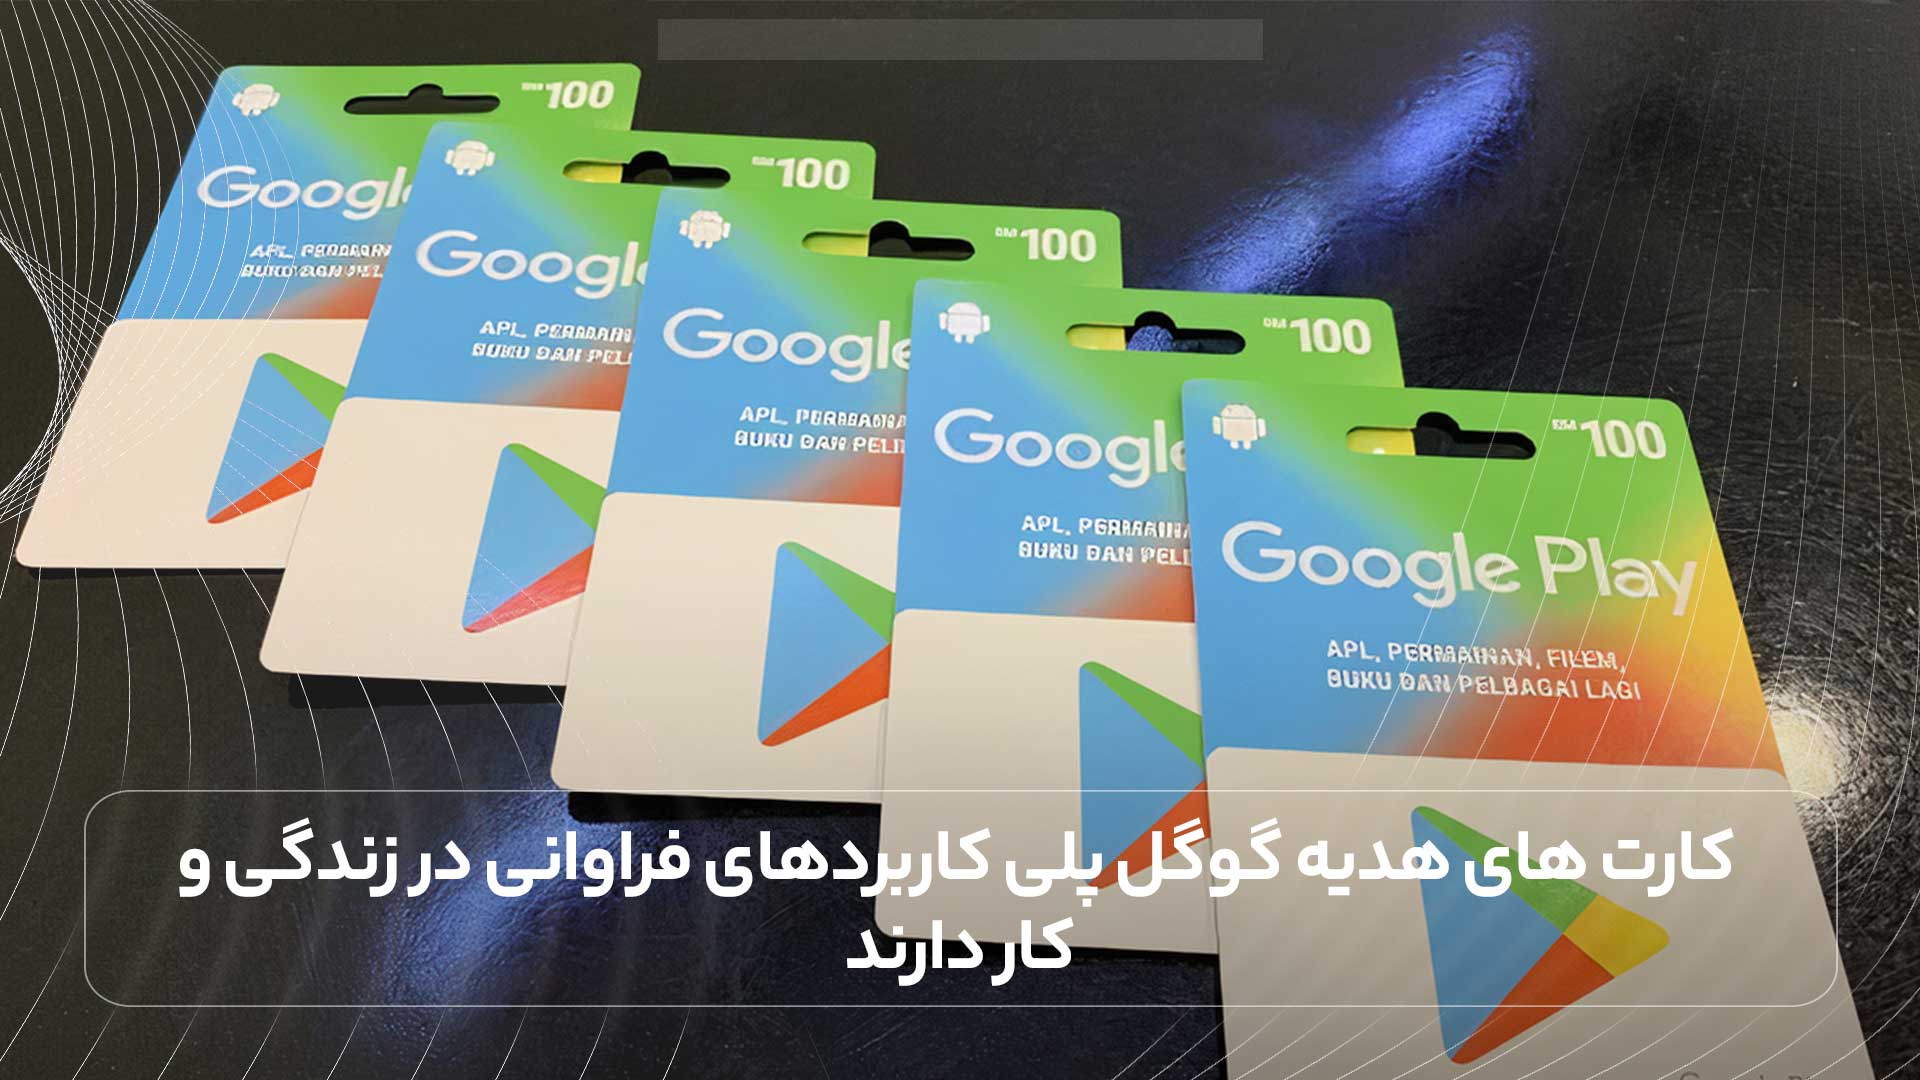 کارت های هدیه گوگل پلی کاربردهای فراوانی در زندگی و کار دارند.